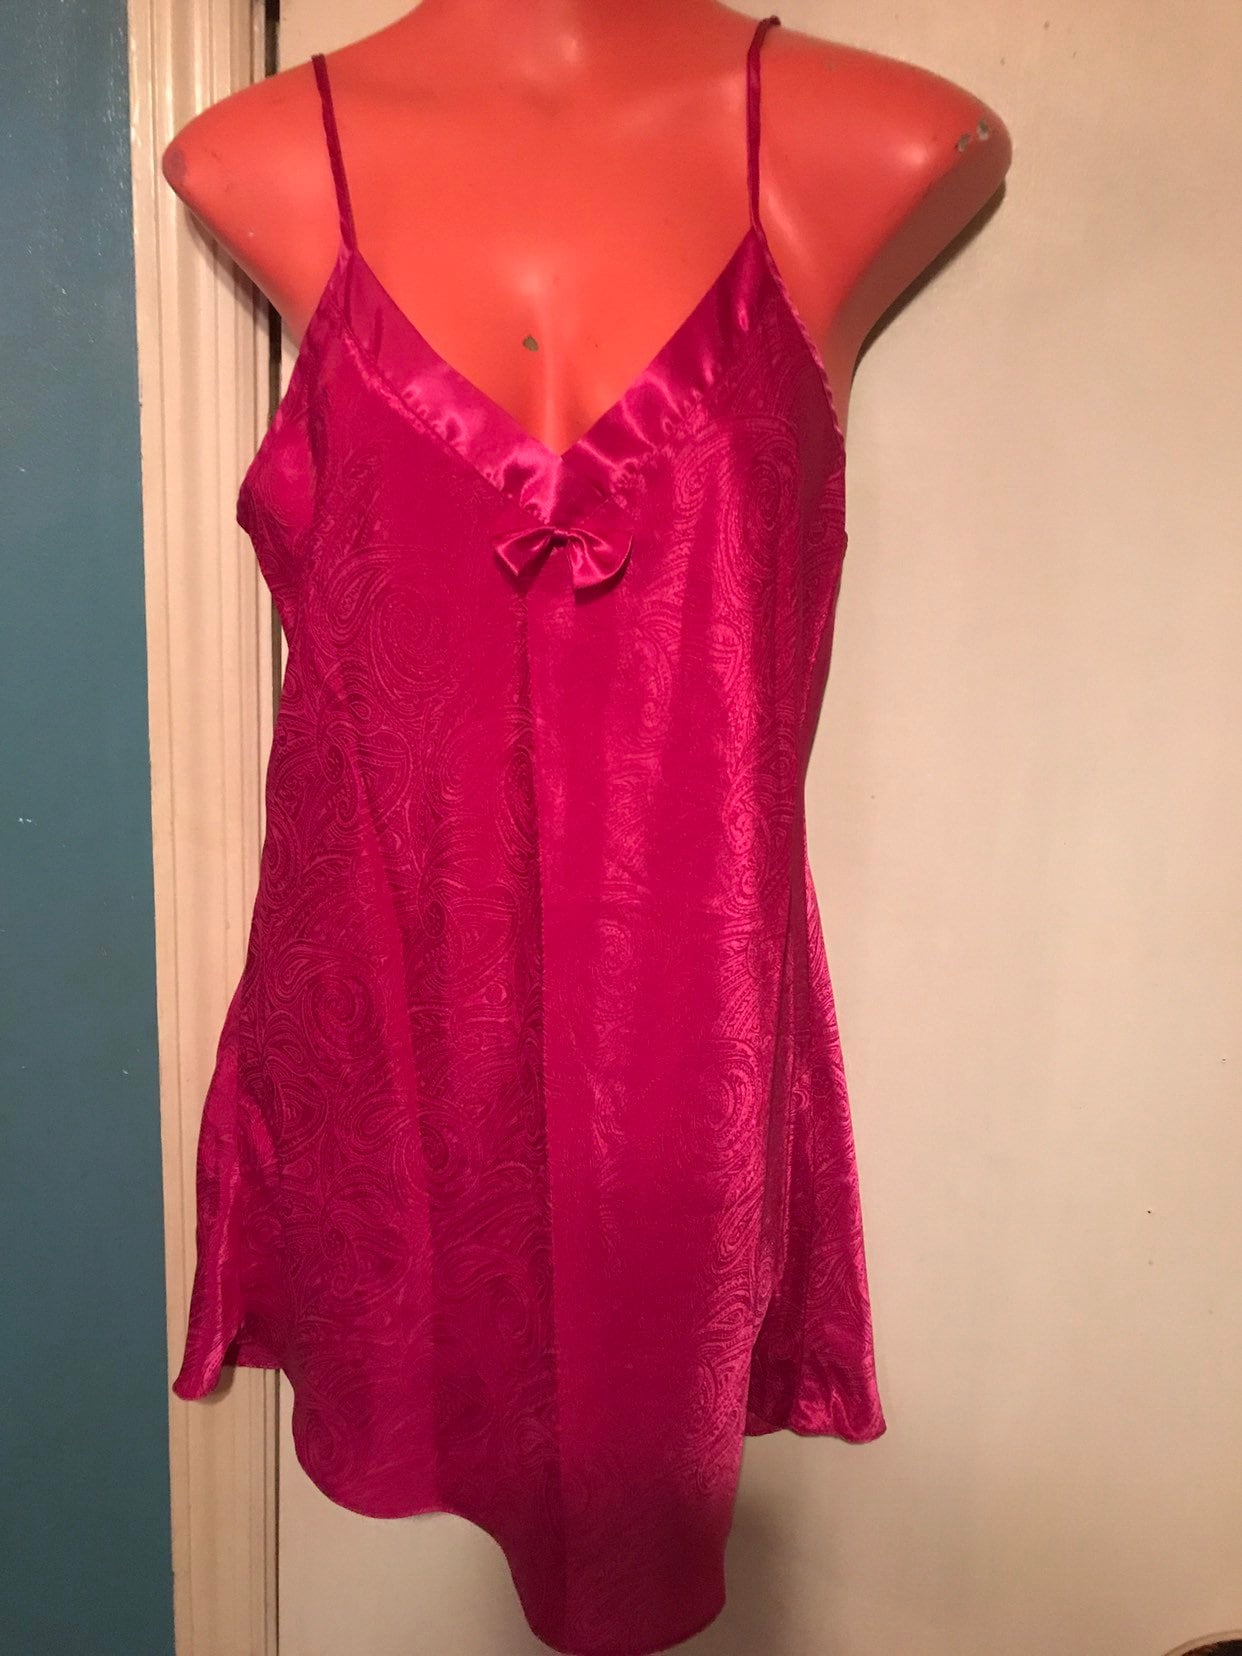 Vintage Pink Satin Nightie Dark Pink Satin Nightie Short Nightgown 1980s Satin Nightie Size